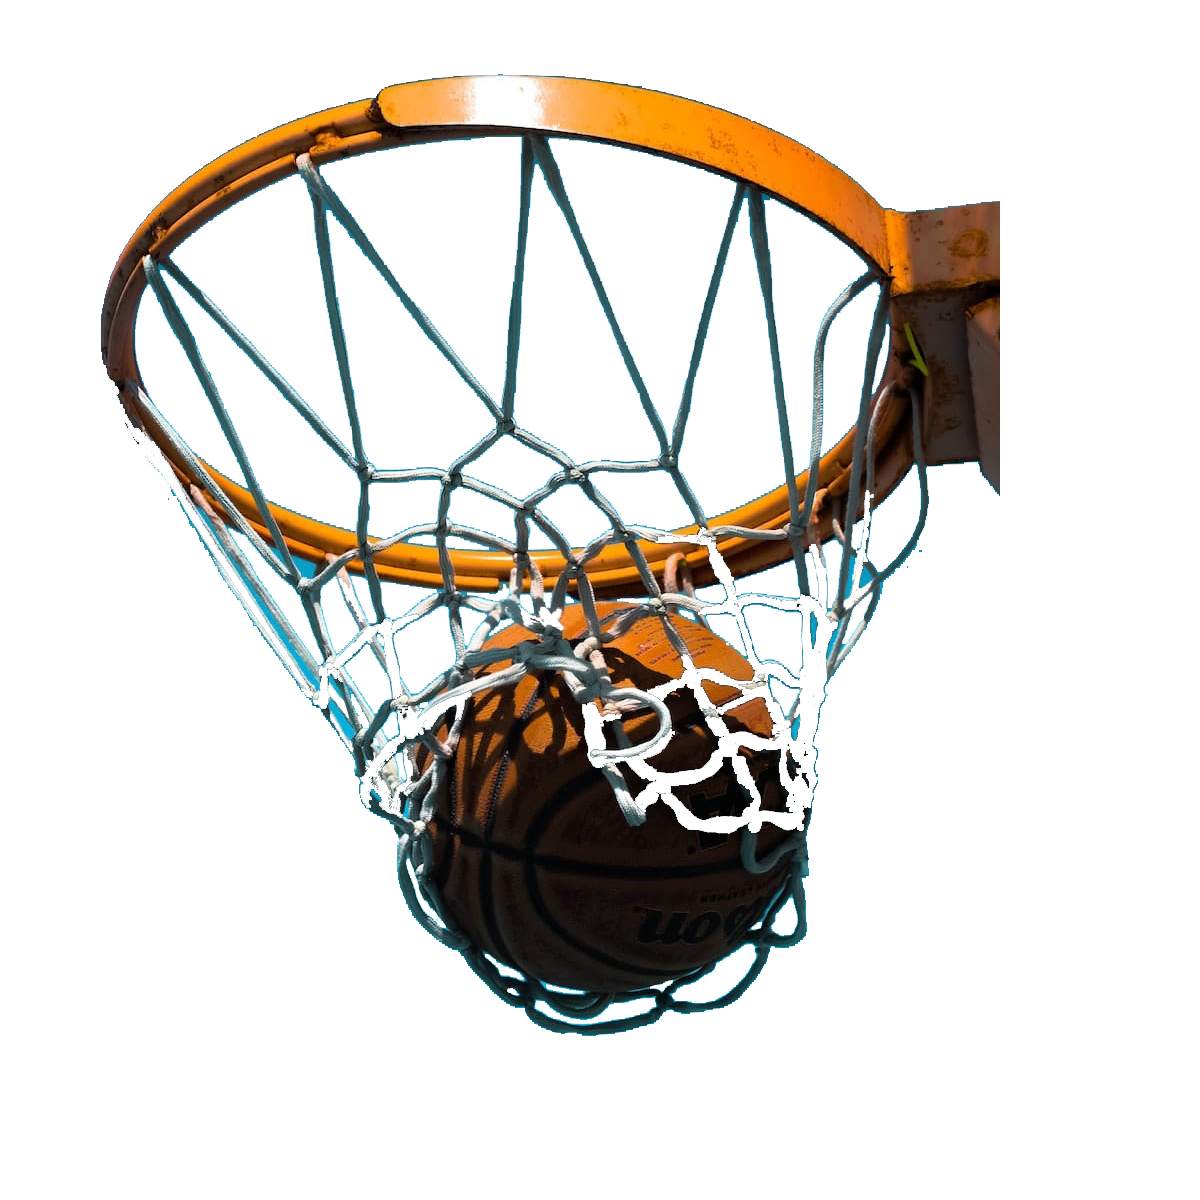 ARO DE BASQUET PROFESIONAL FIBA REBATIBLE